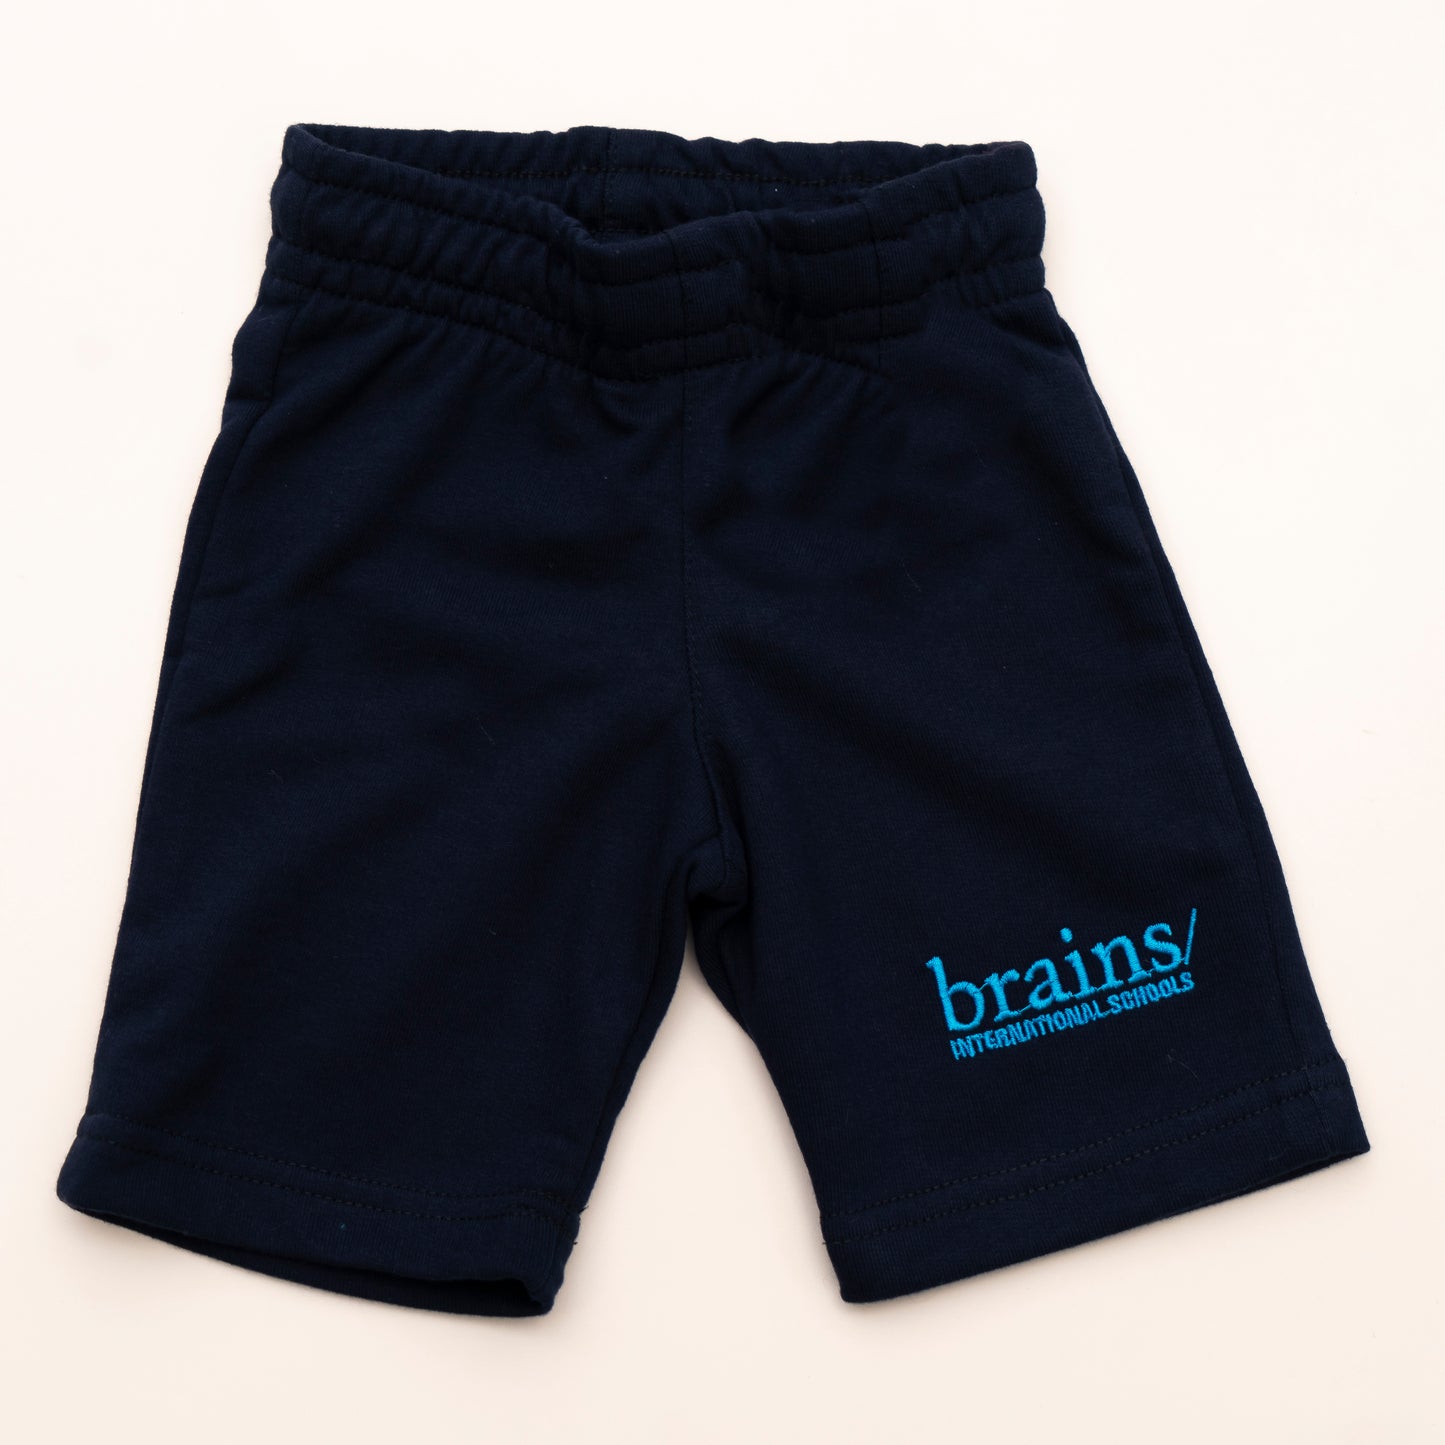 Bermuda marino Brains